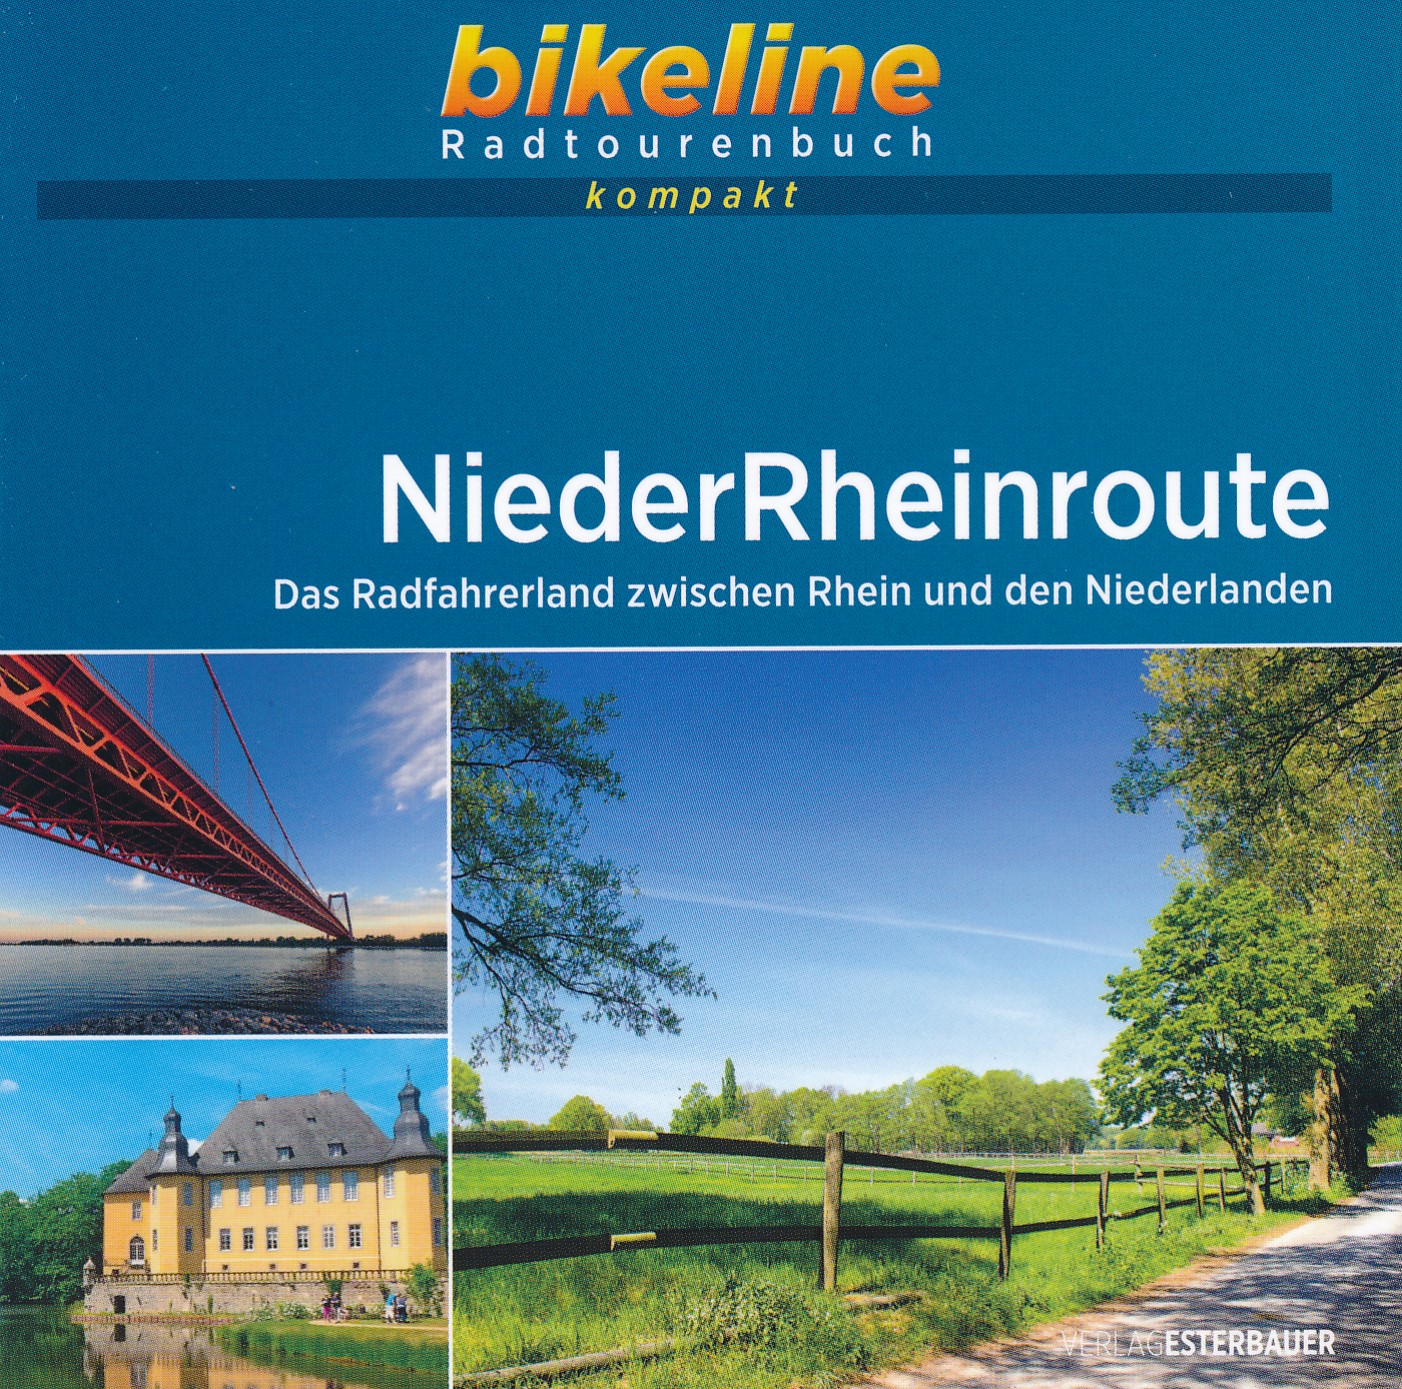 Online bestellen: Fietsgids Bikeline Radtourenbuch kompakt Niederrheinroute | Esterbauer